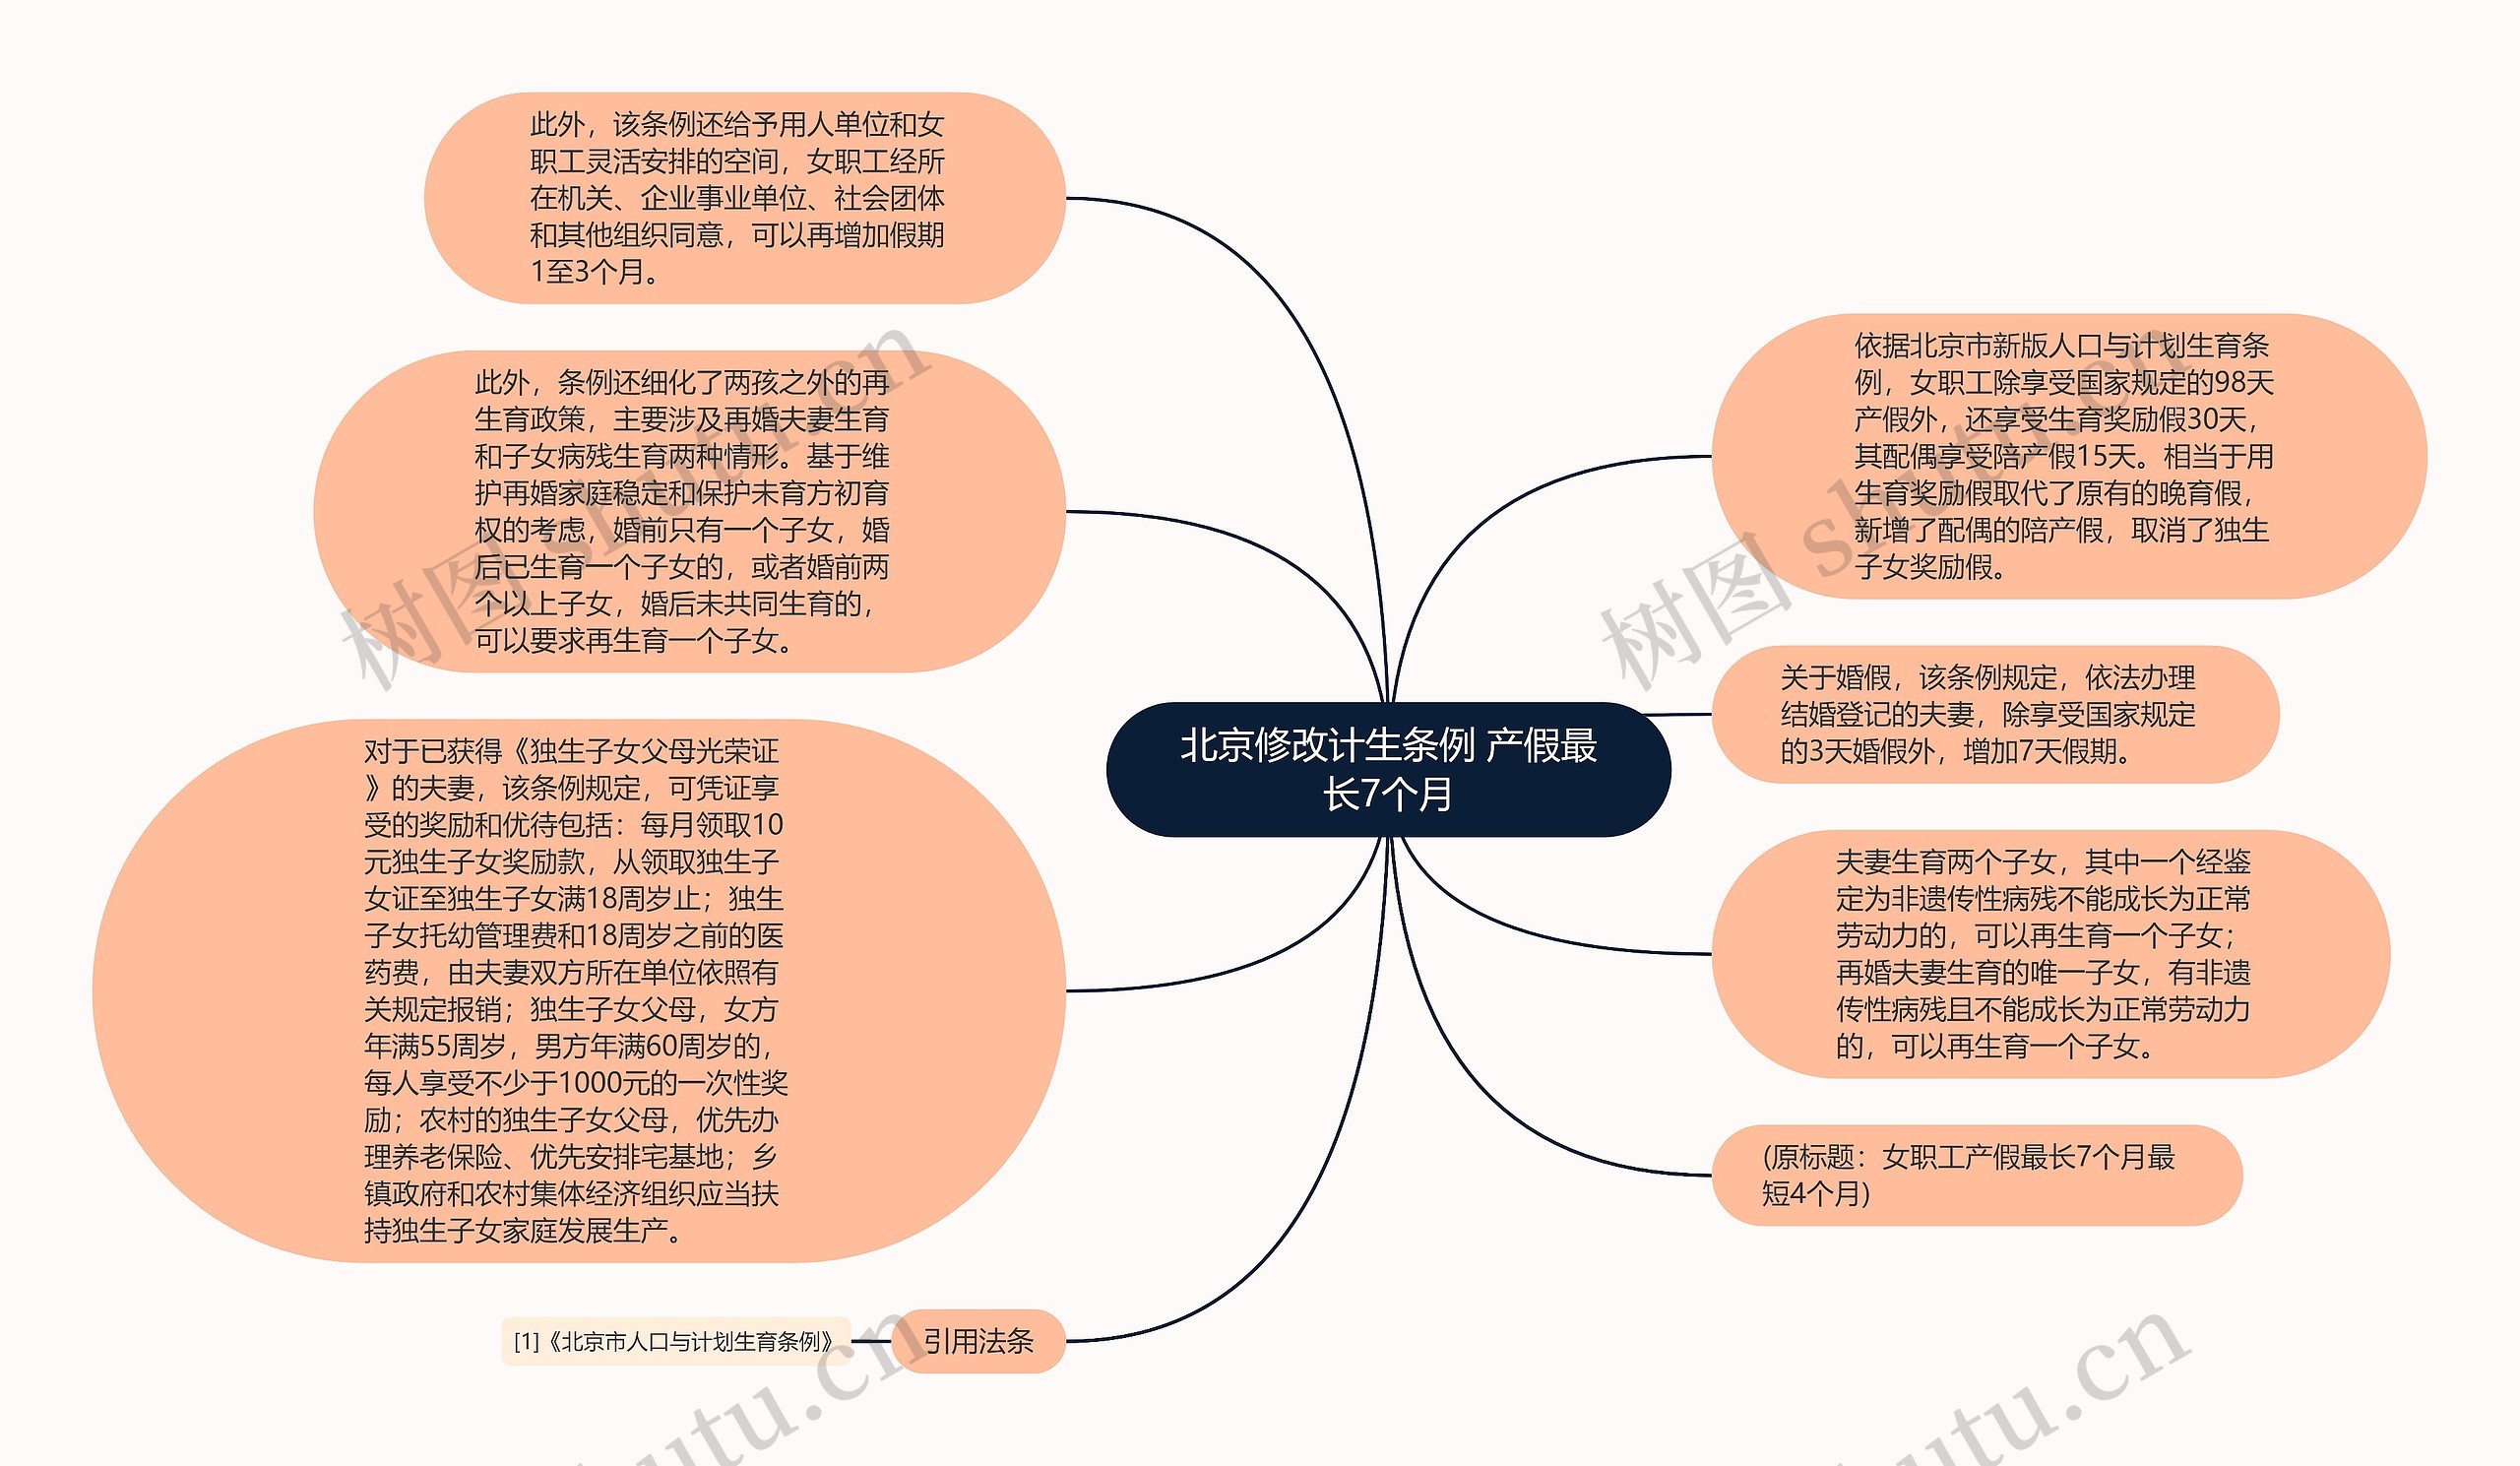 北京修改计生条例 产假最长7个月思维导图